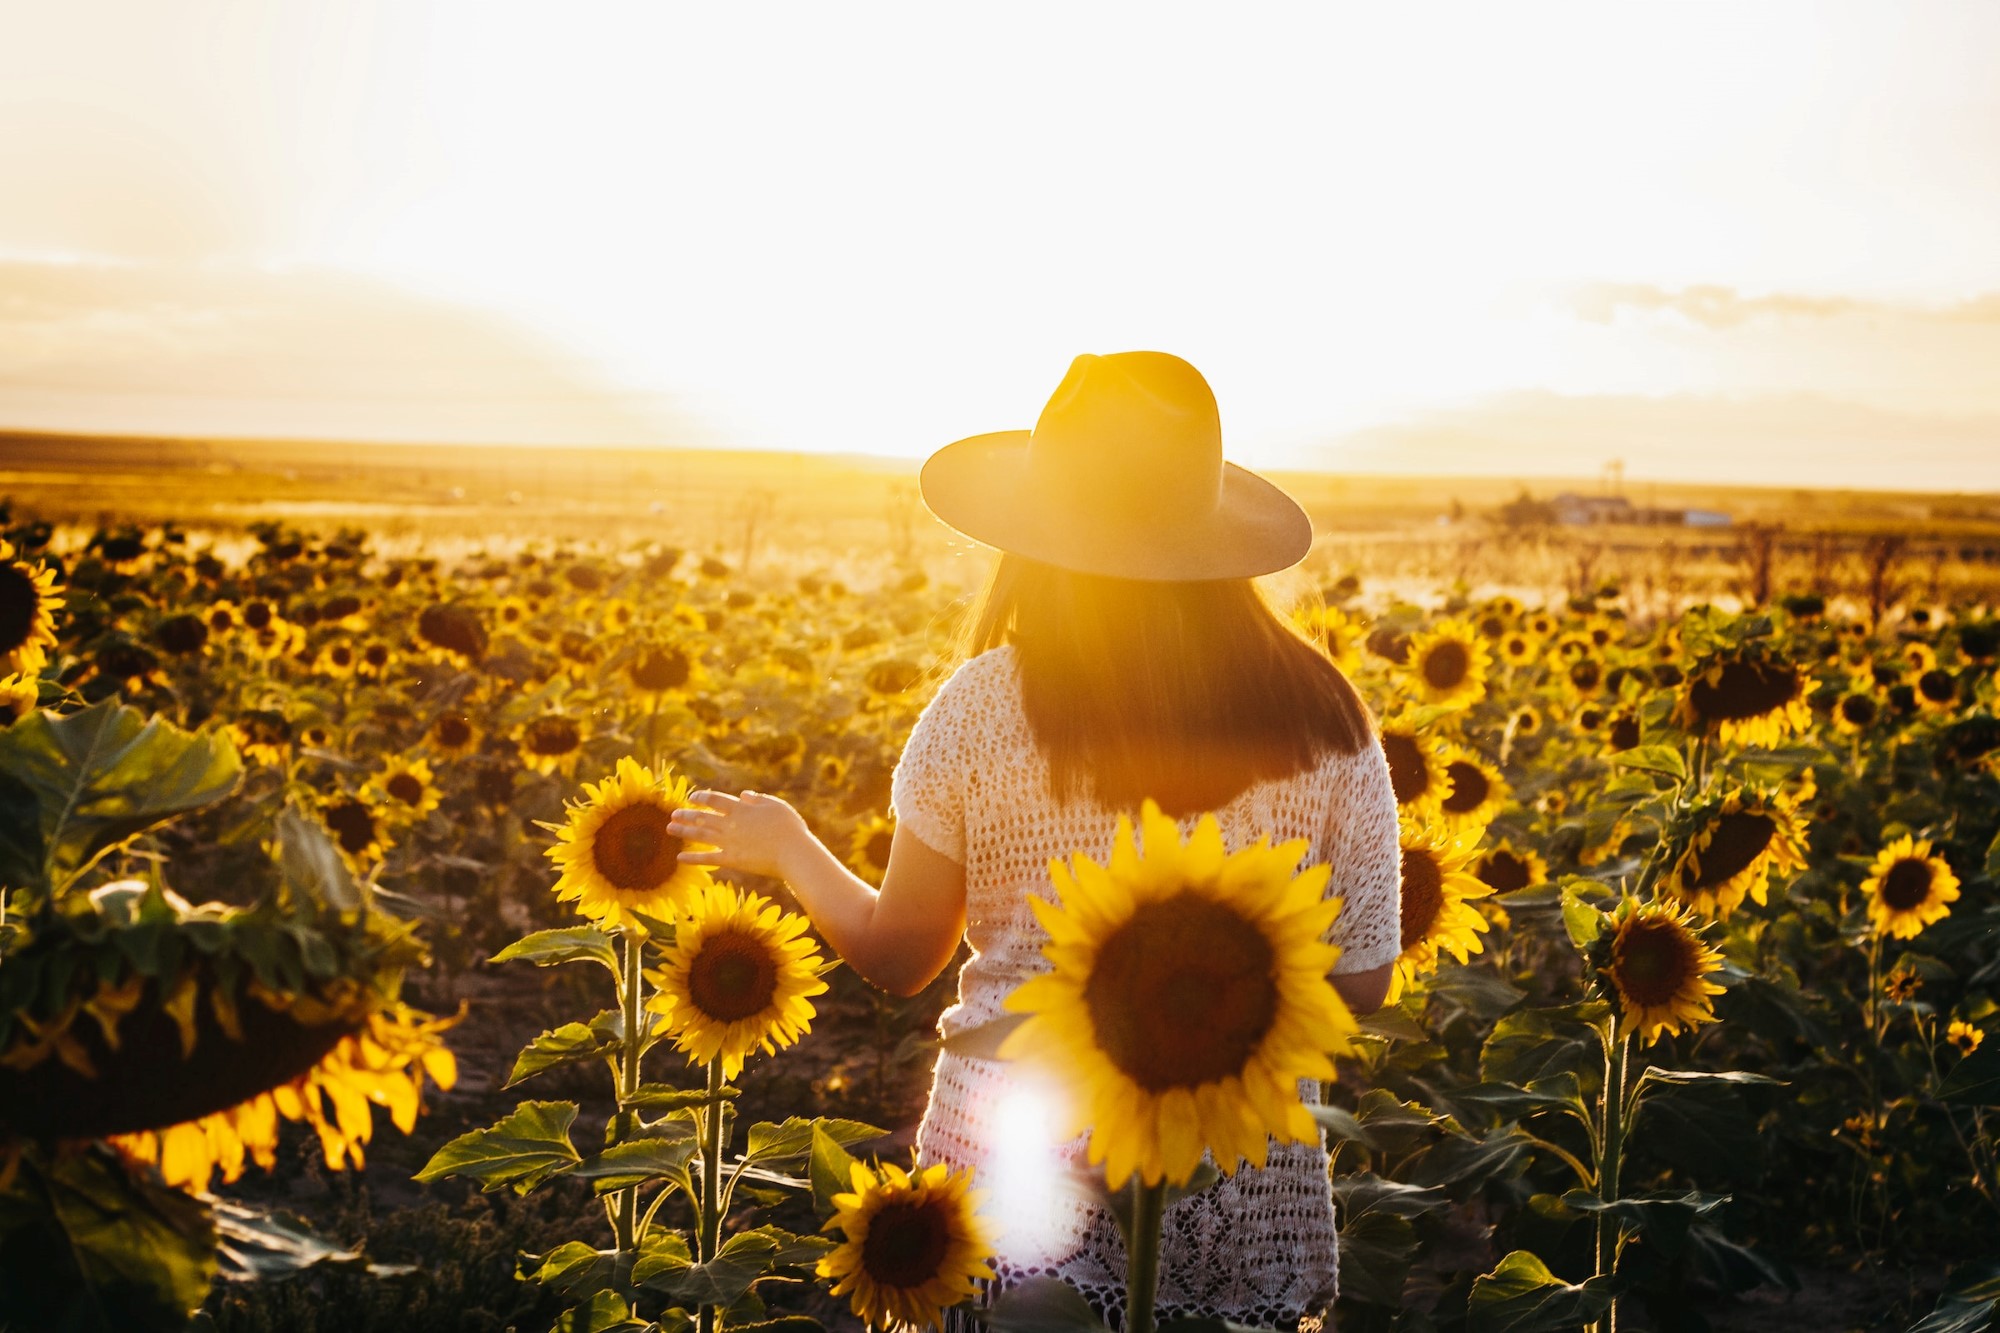 En jente med hatt som står i en eng med solsikker i solnedgang